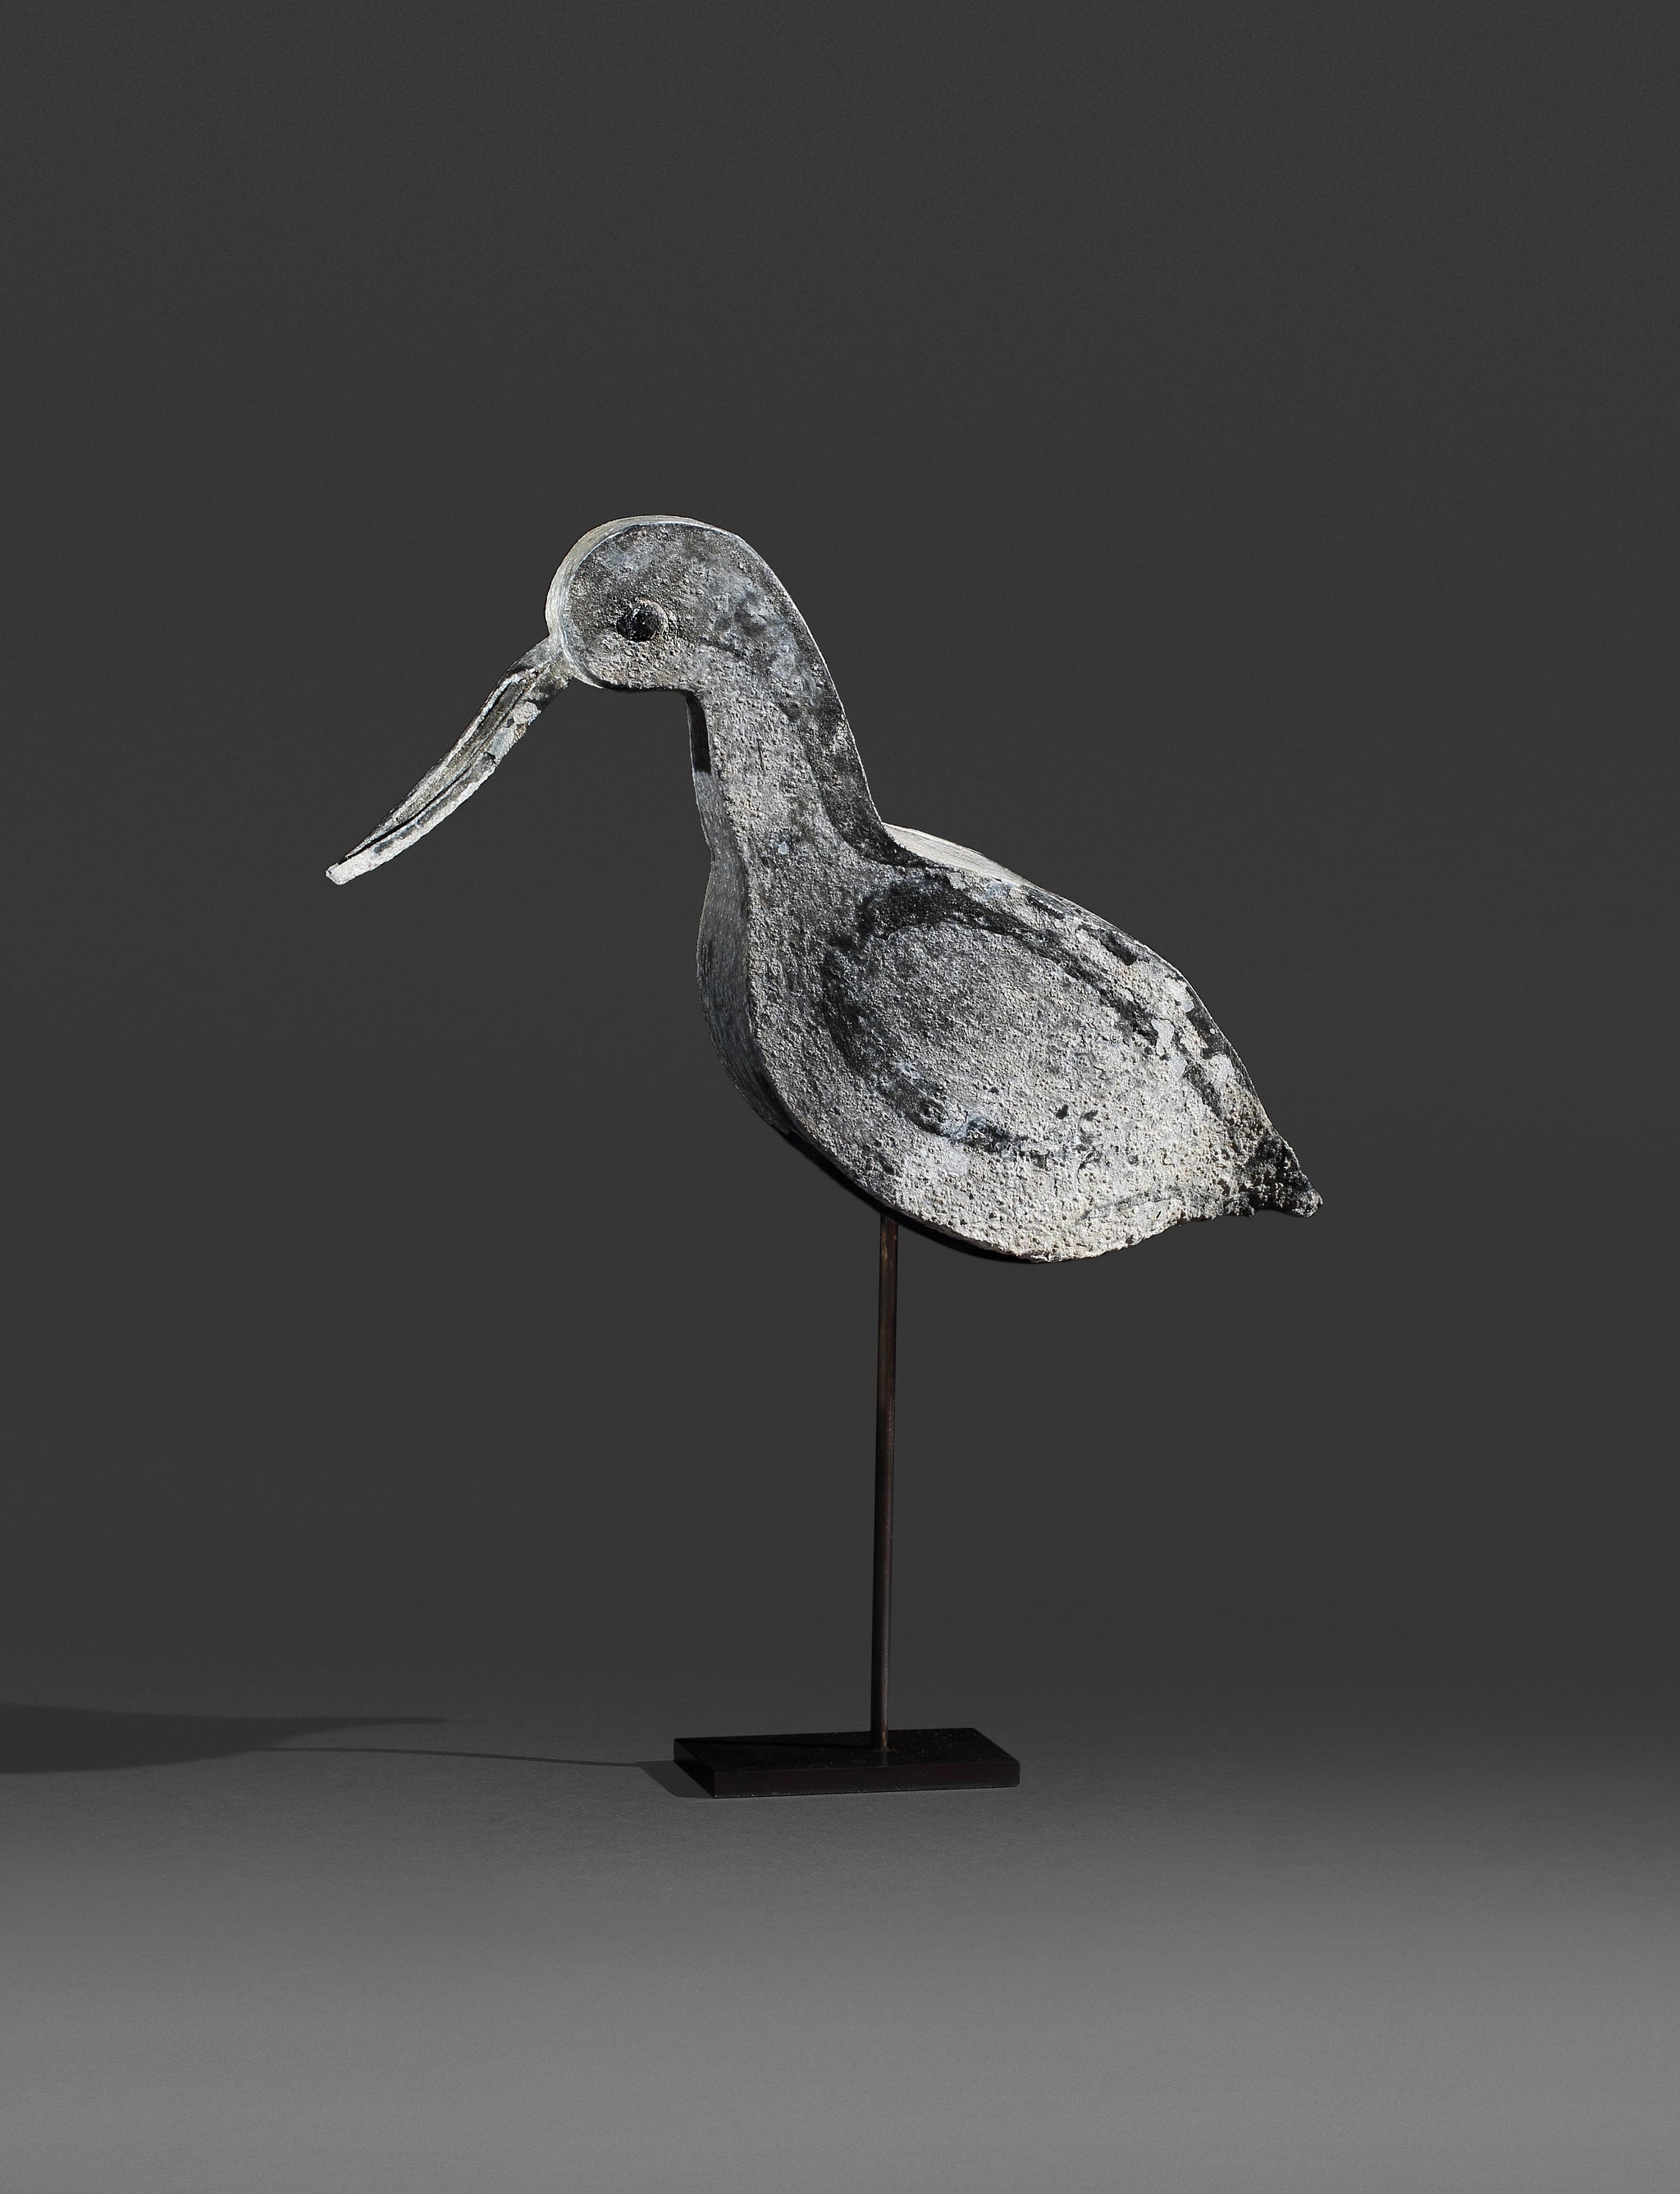 A Rare Sculptural Shorebird Decoy with Long Beak